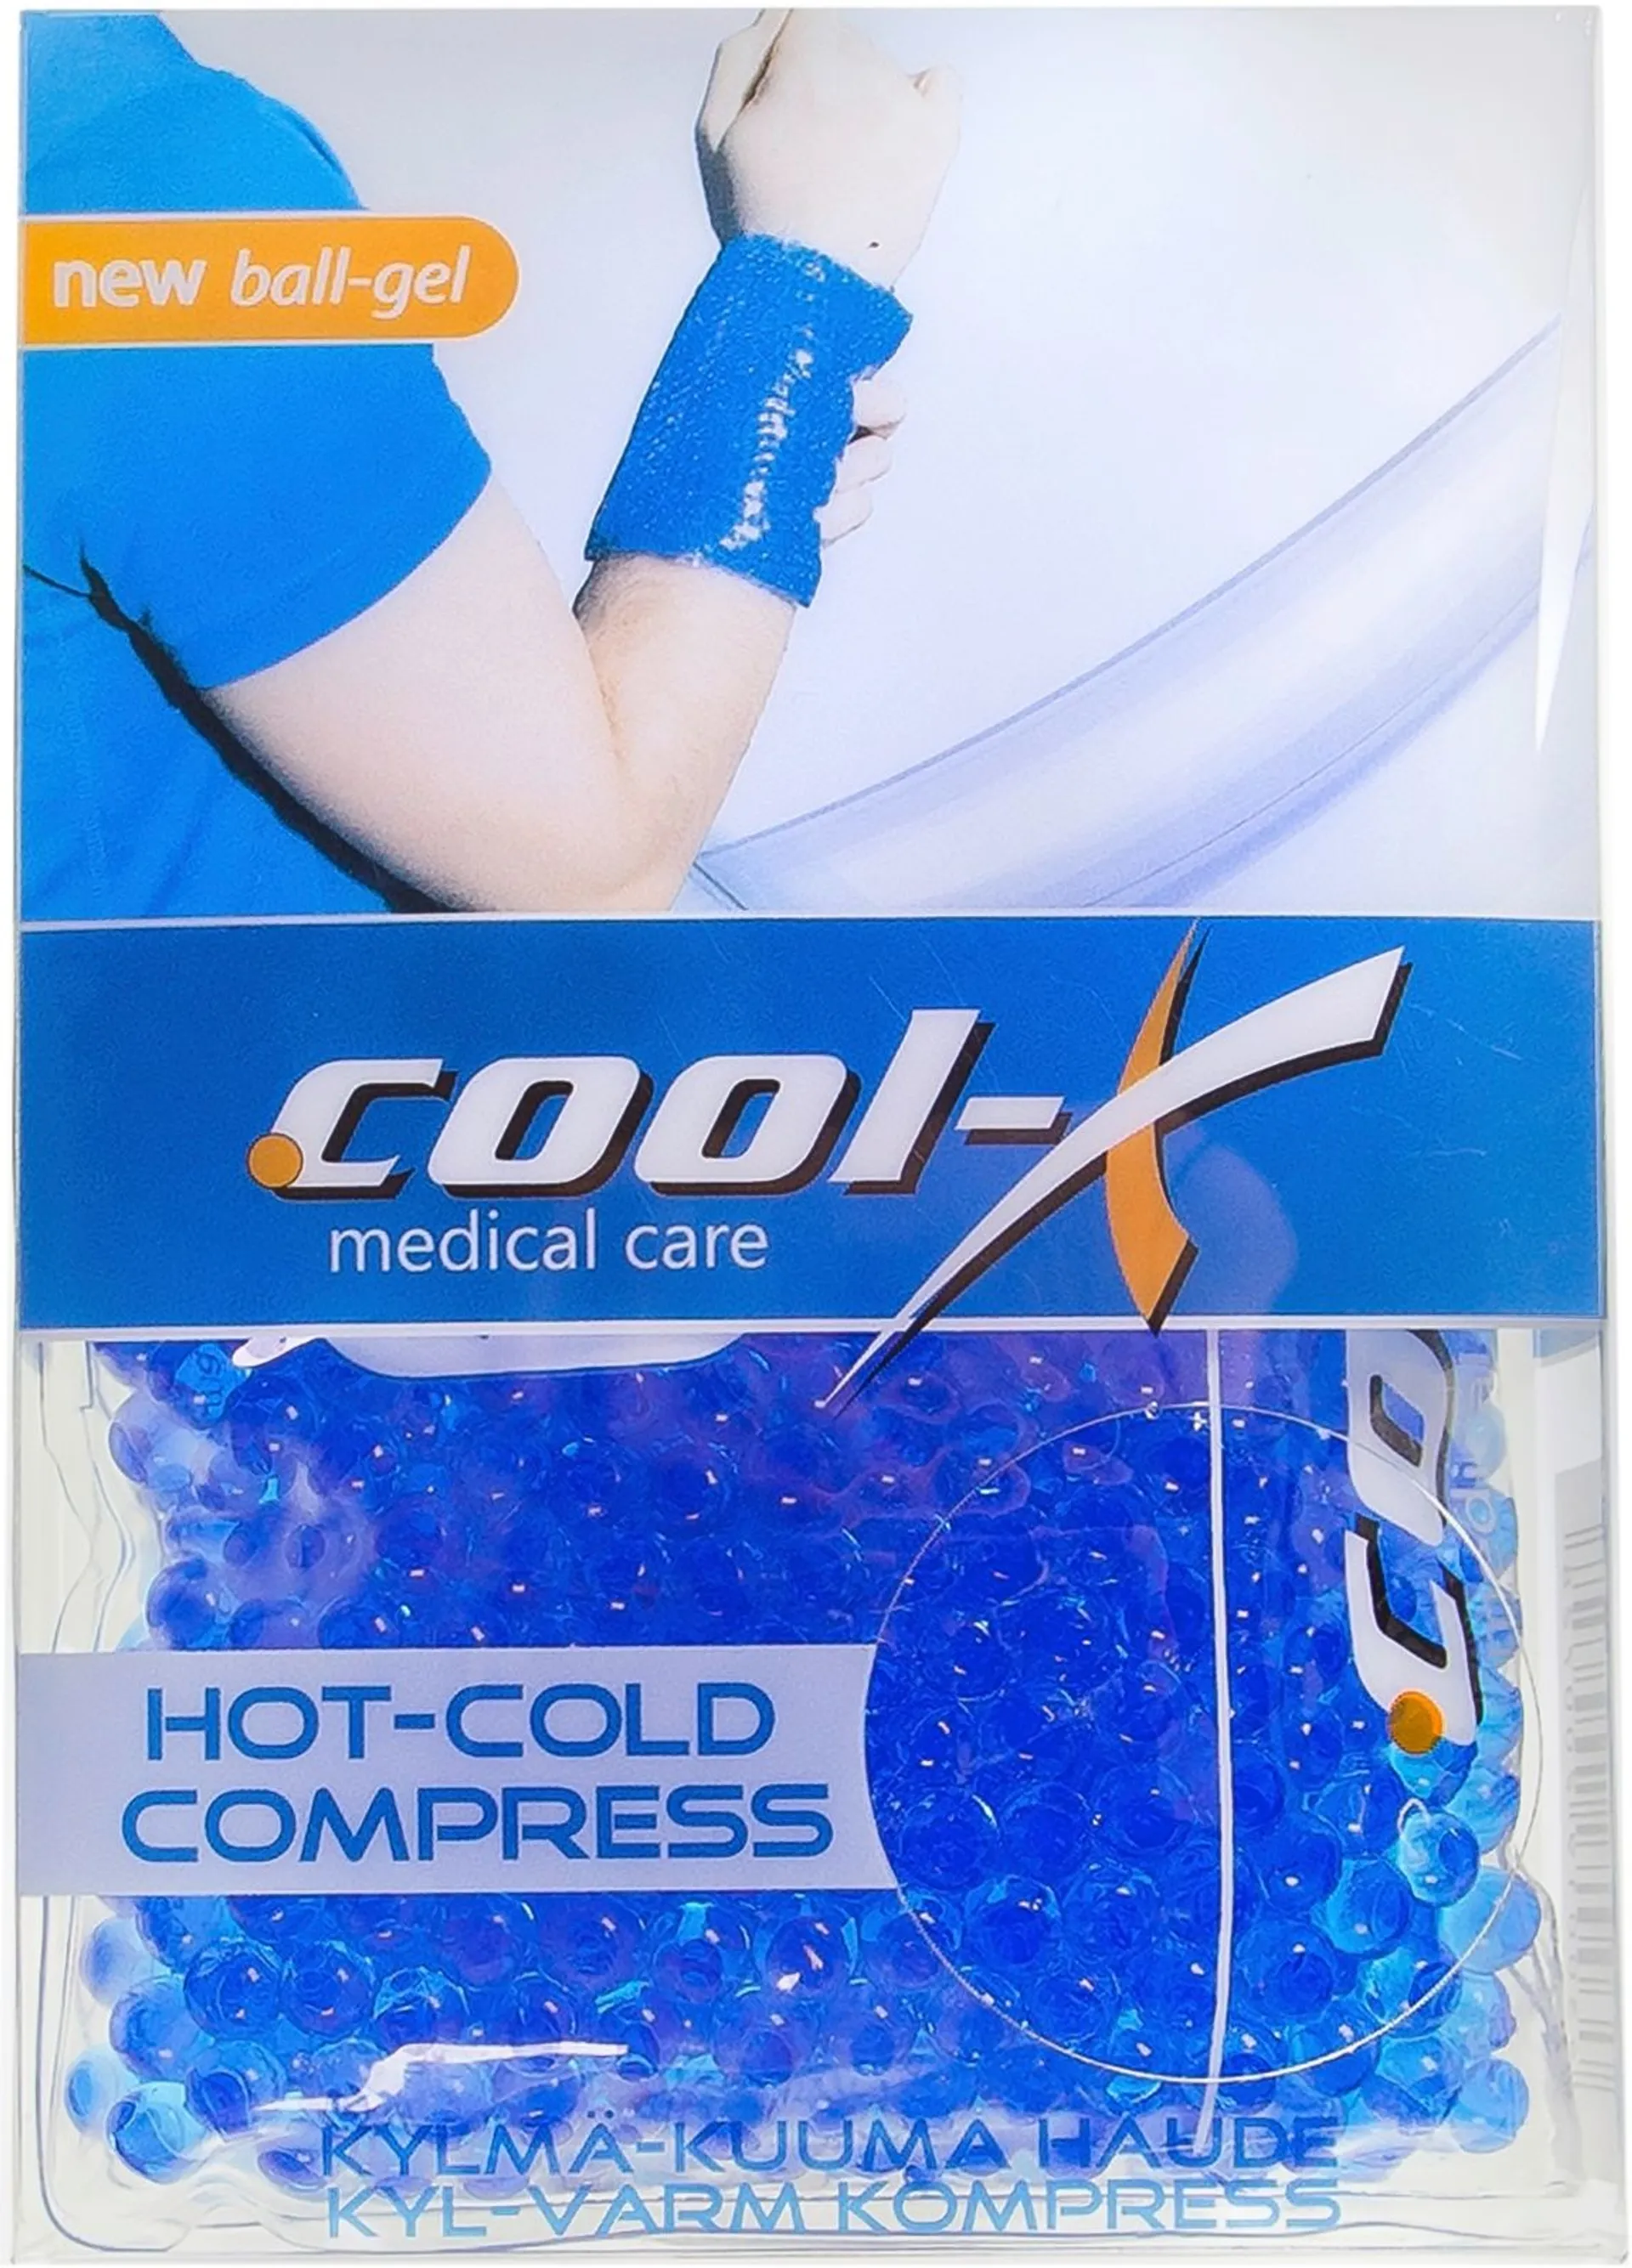 Cool-X pallogeeli kylmä-kuumapussi